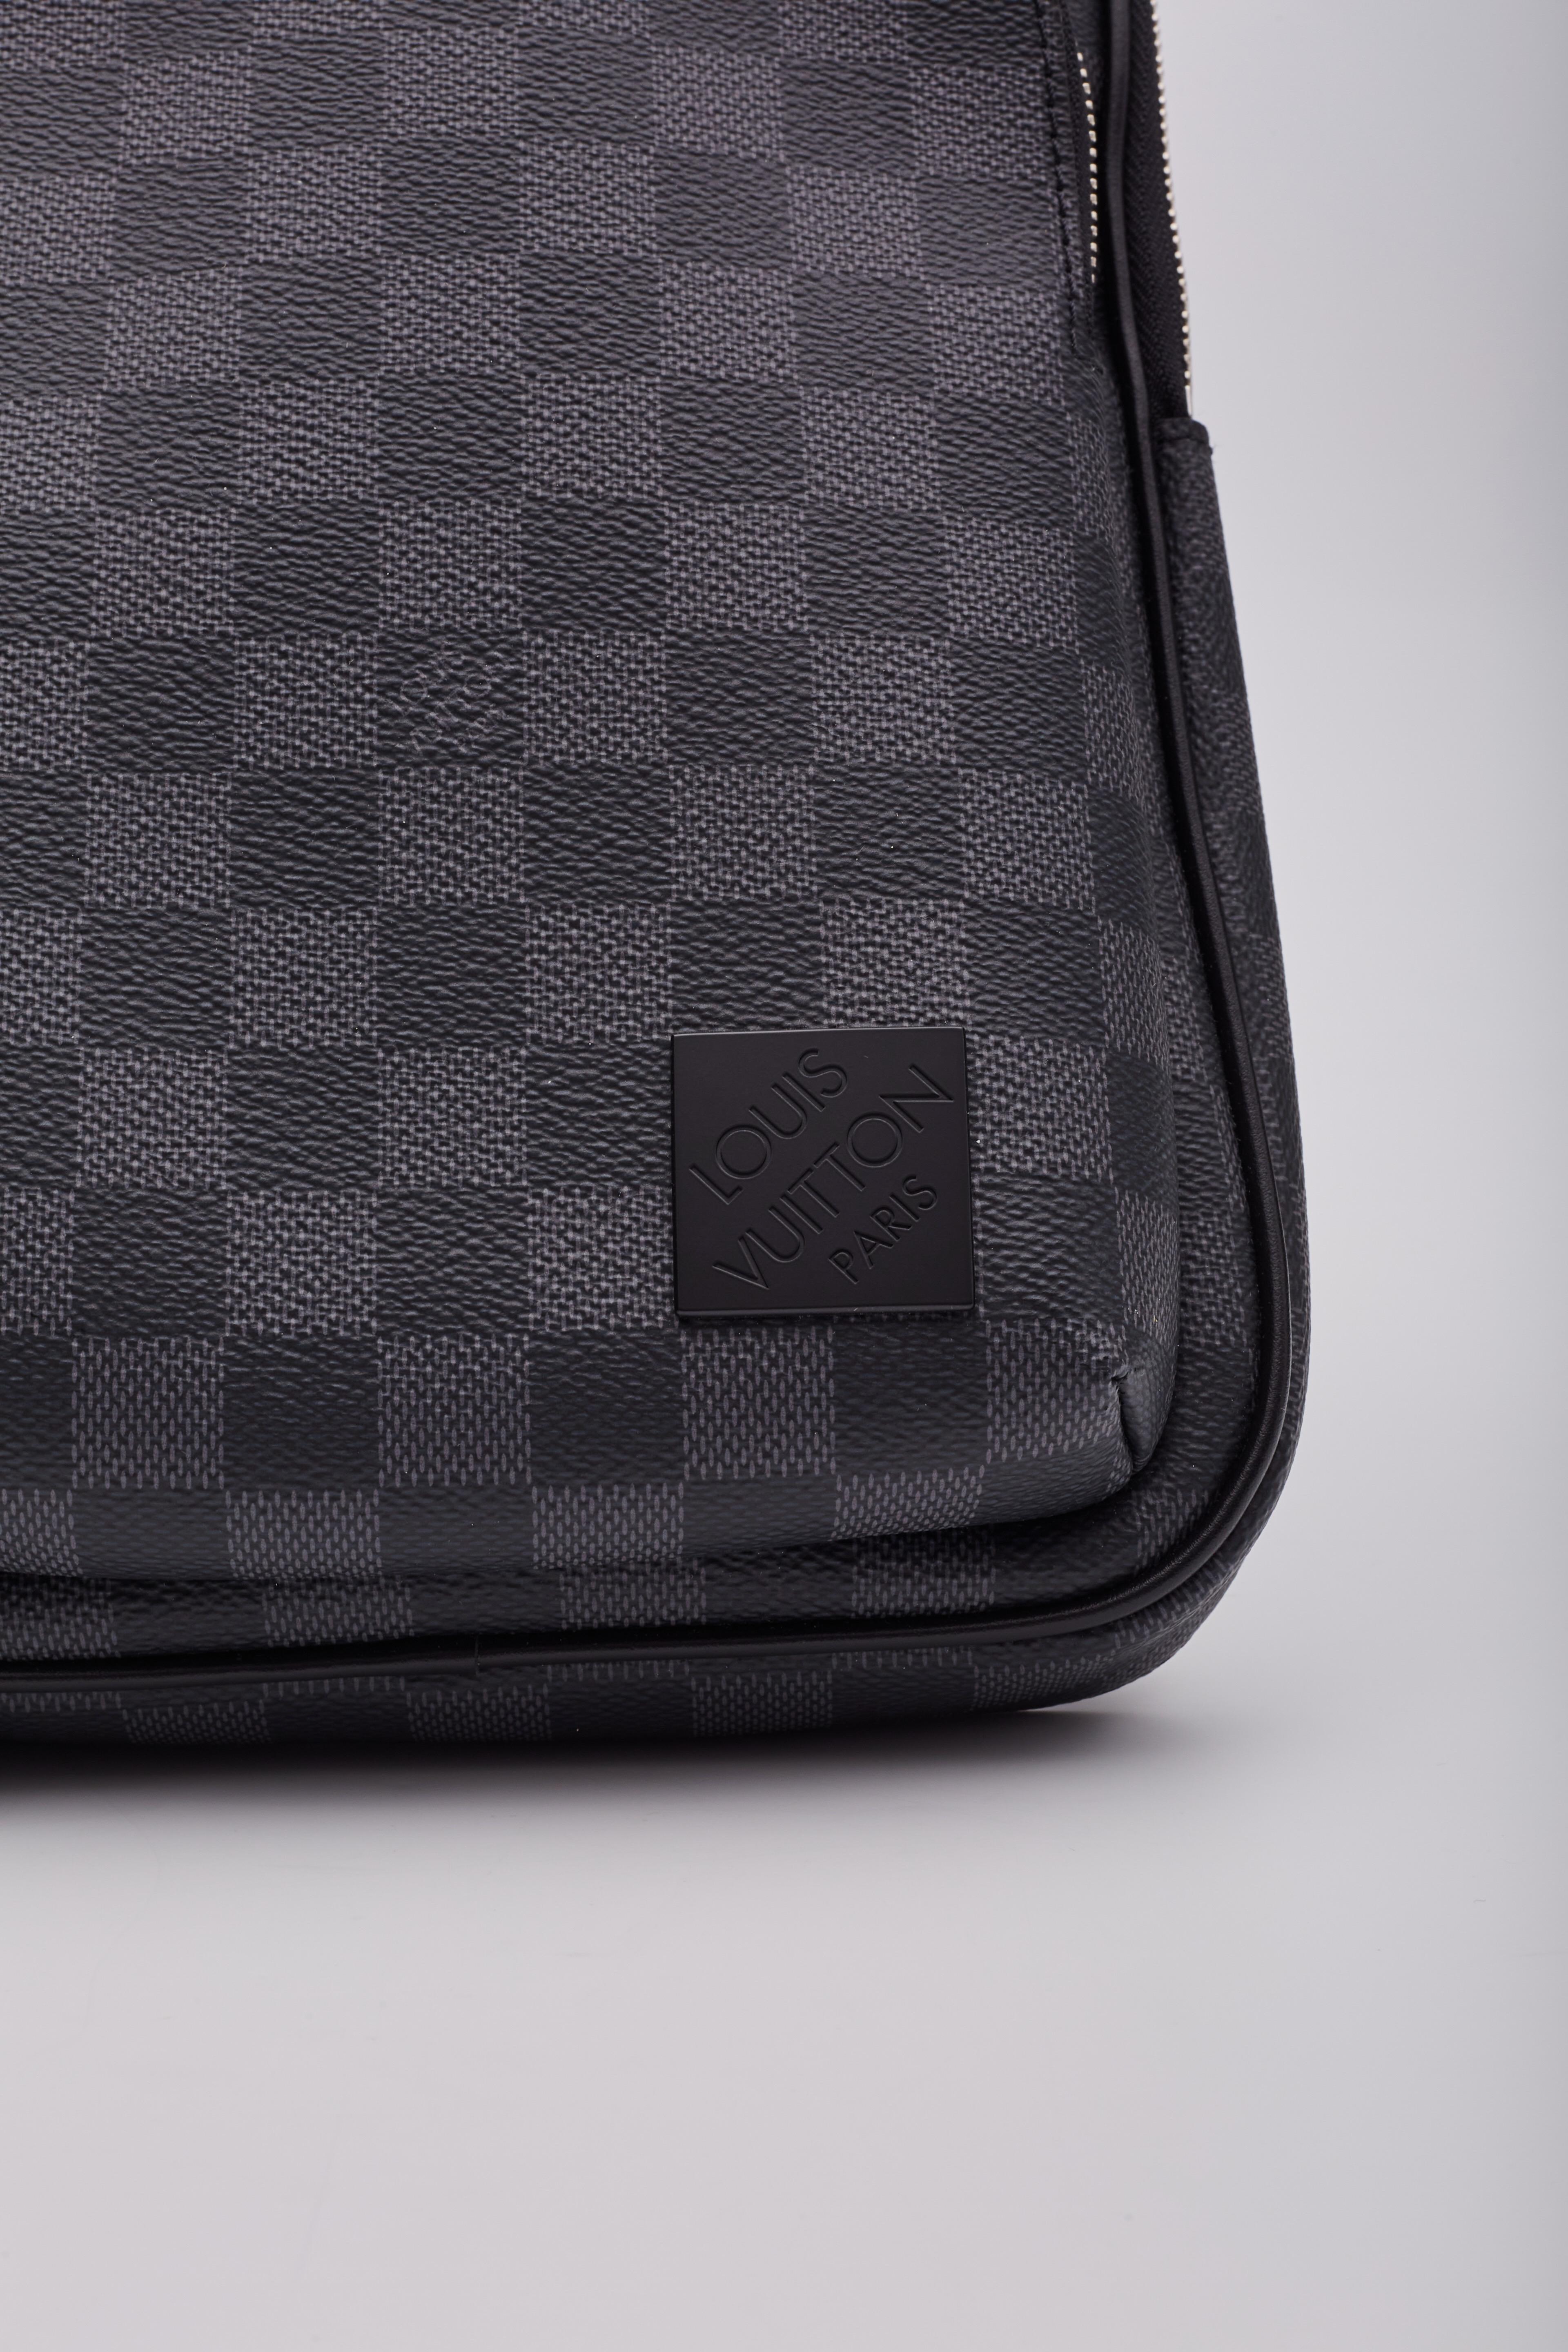 Louis Vuitton Damier Graphite Avenue Sling Messenger Bag Nm For Sale 6